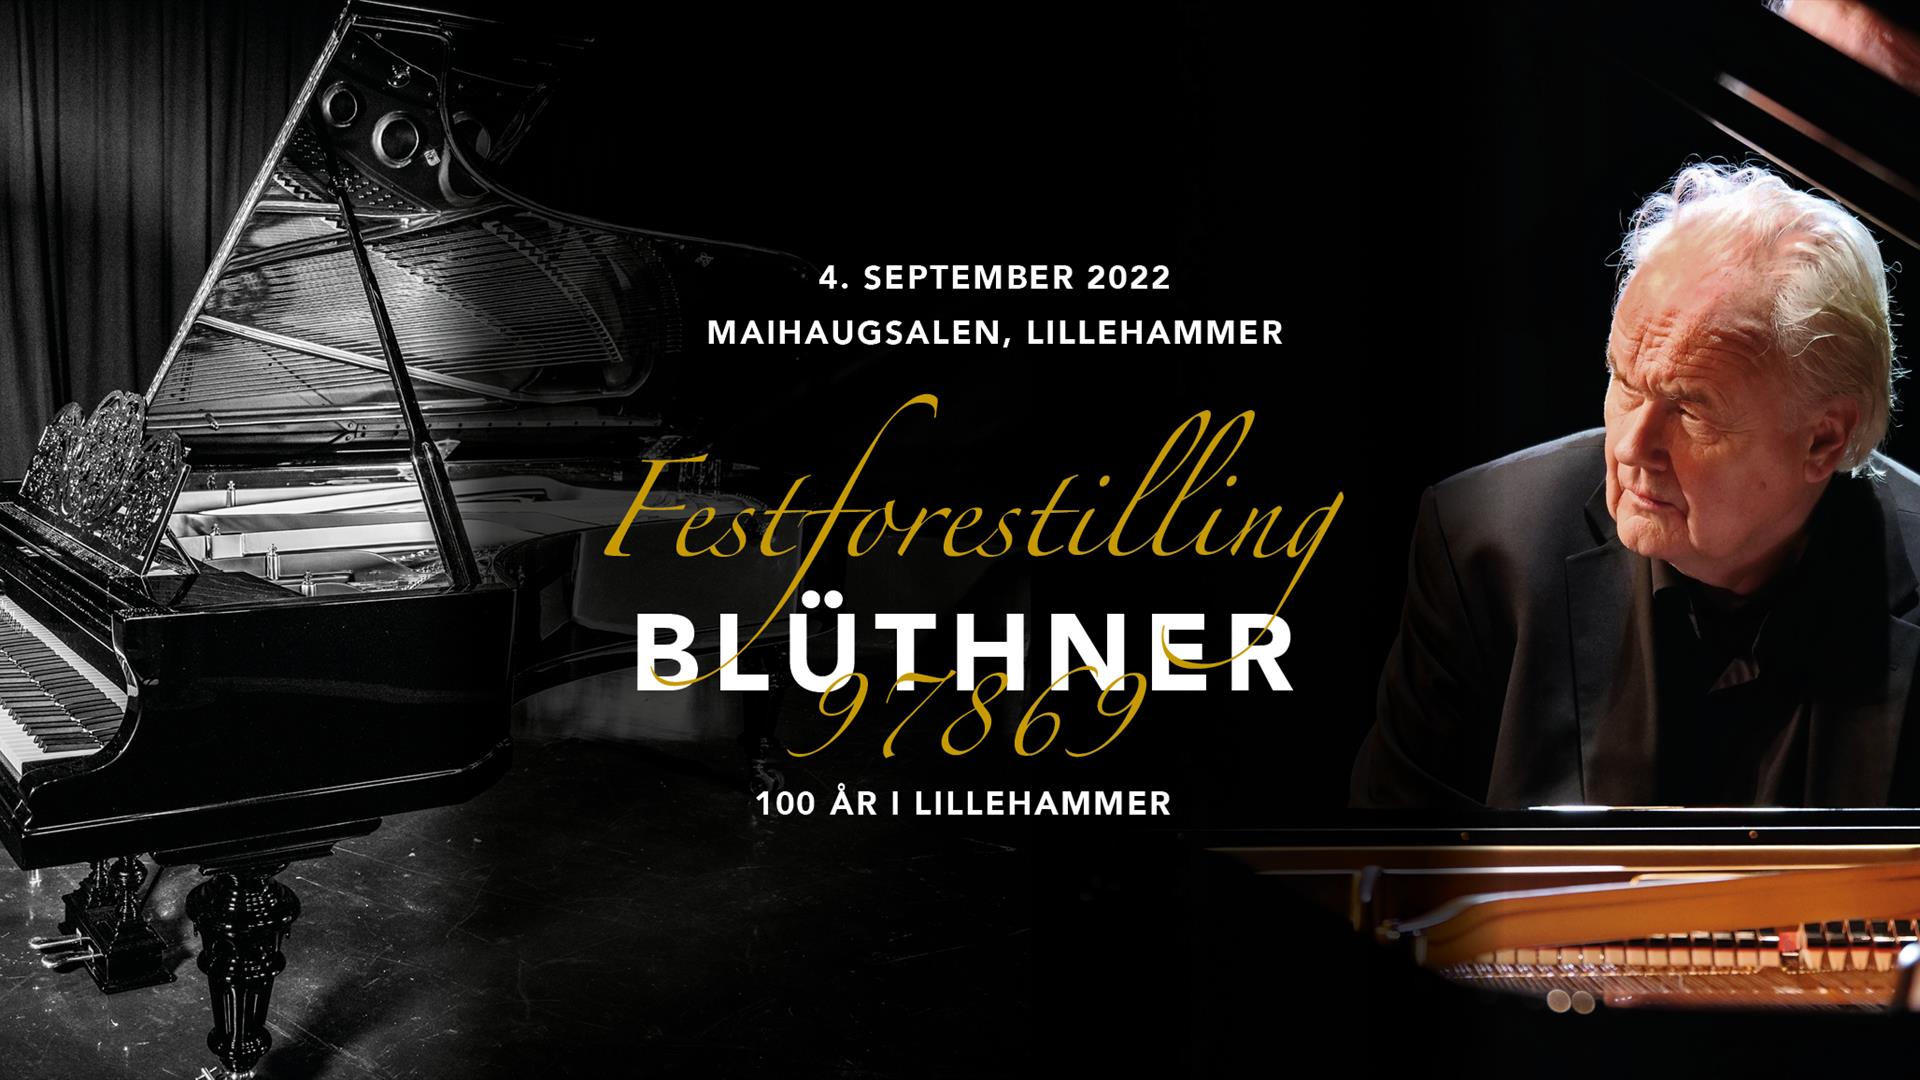 Blüthner 97869 - Byhistorie med flygel i hovedrollen